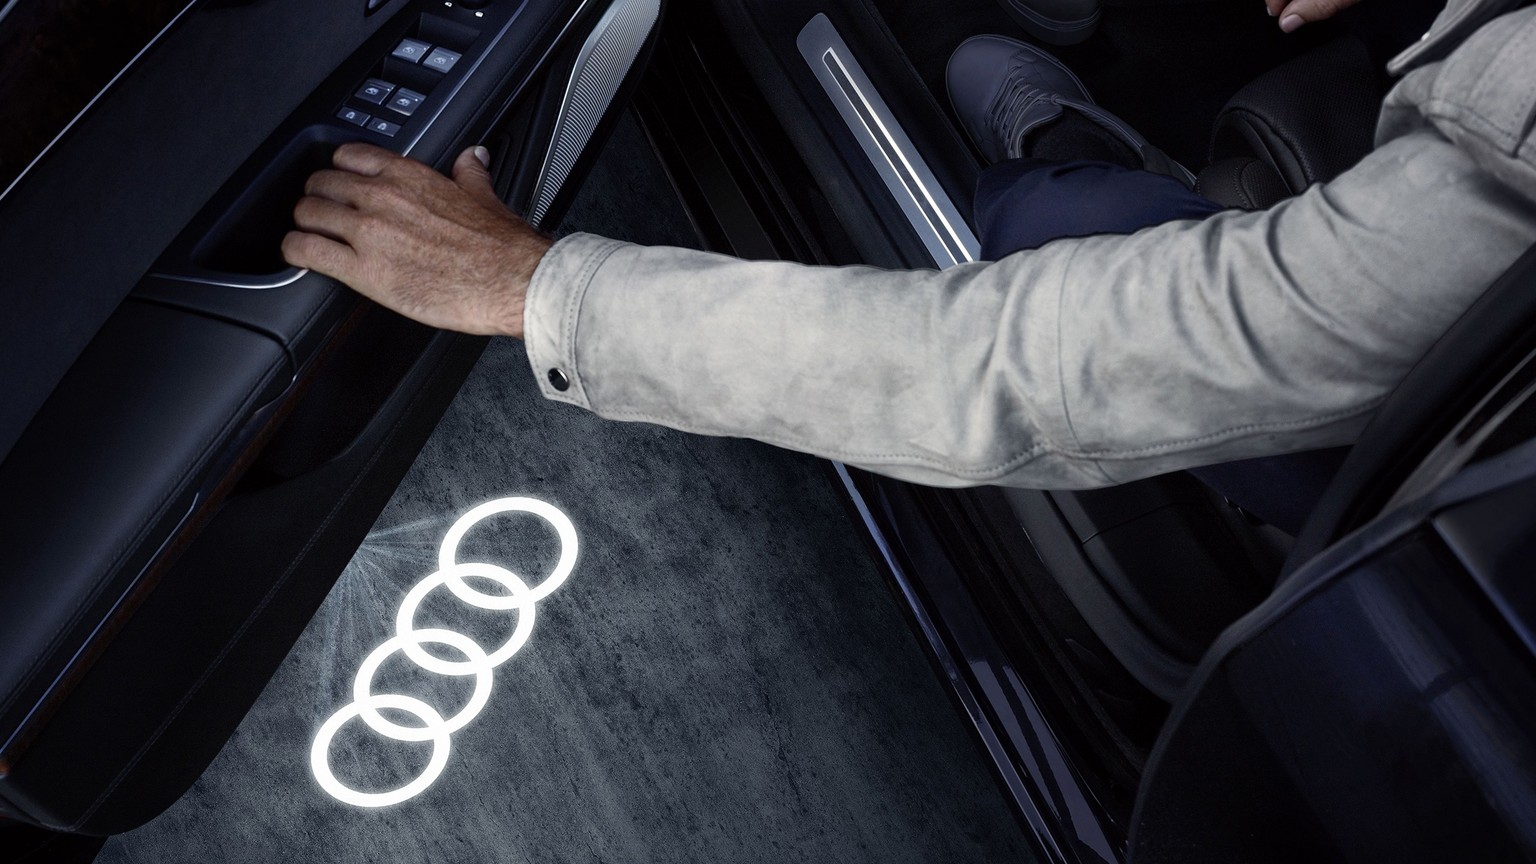 Einstiegs-LED Ringe > Audi Original Zubehör > Kundenbereich > Audi Schweiz